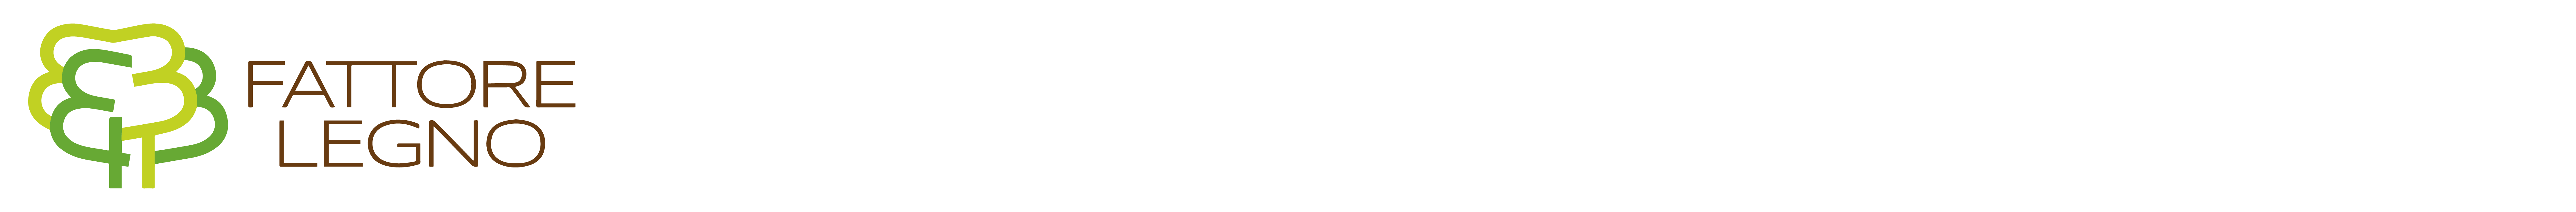 Fattore Legno Logo